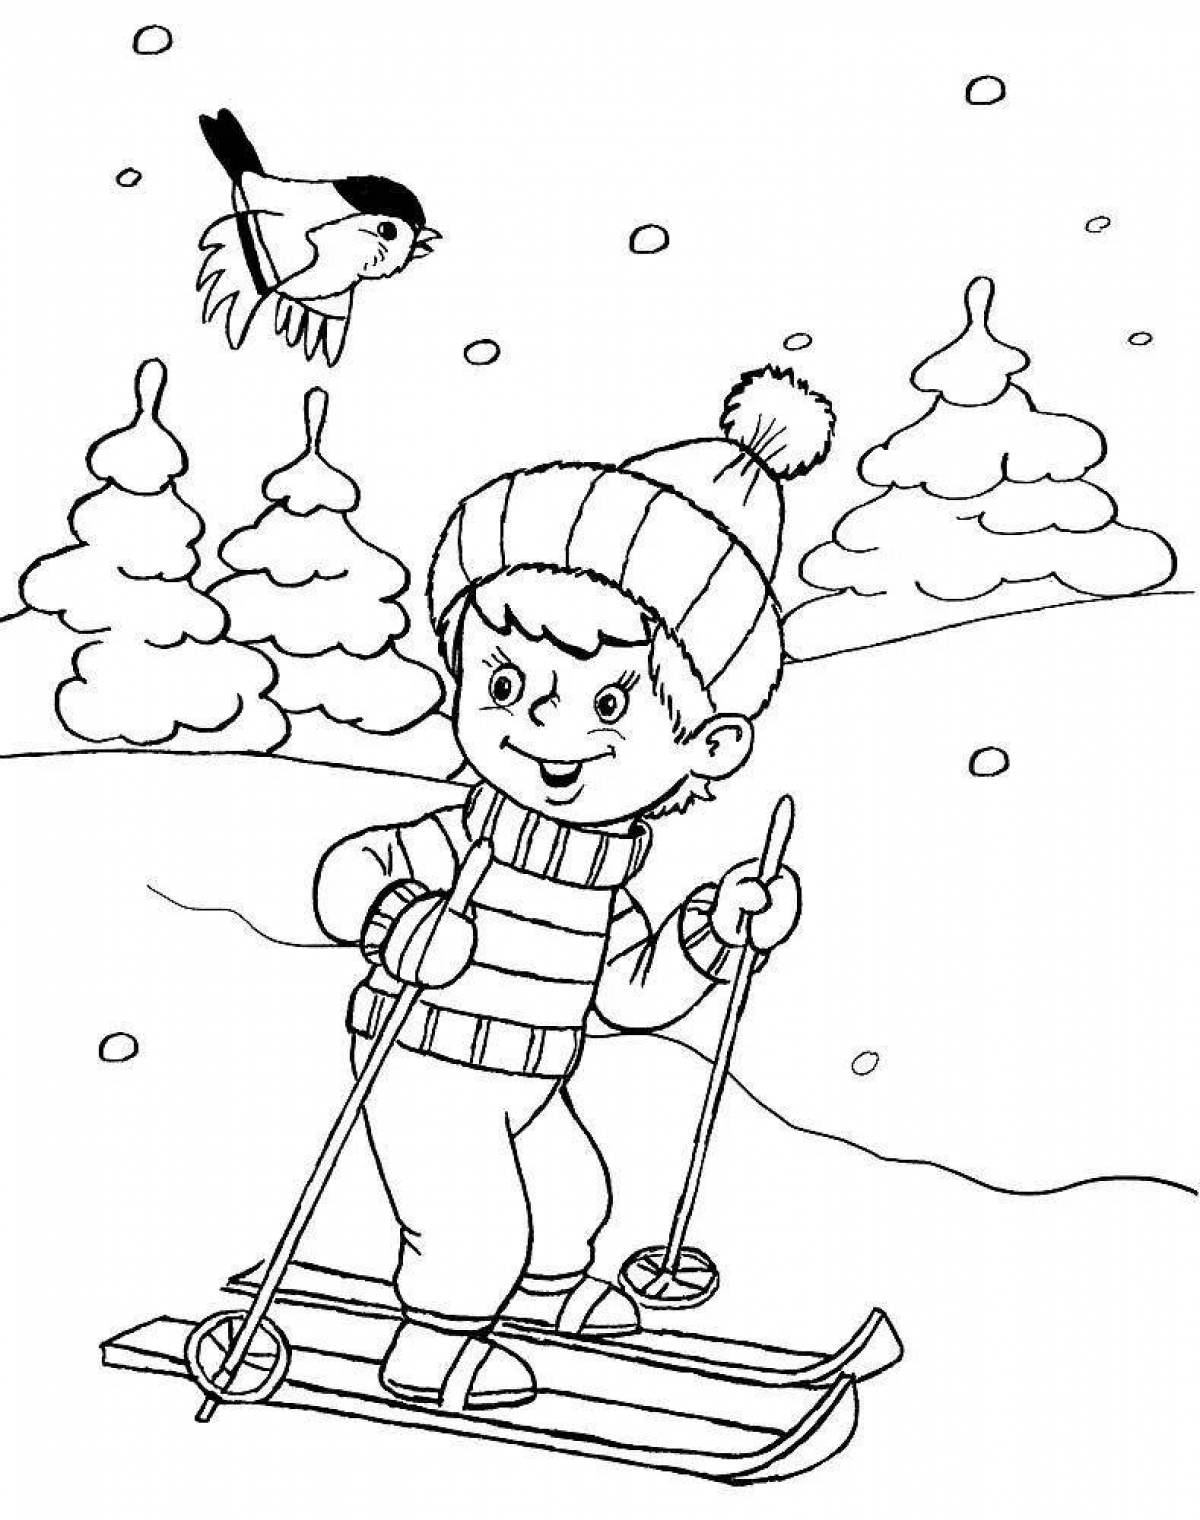 Раскраска энергичный лыжник для детей 6-7 лет